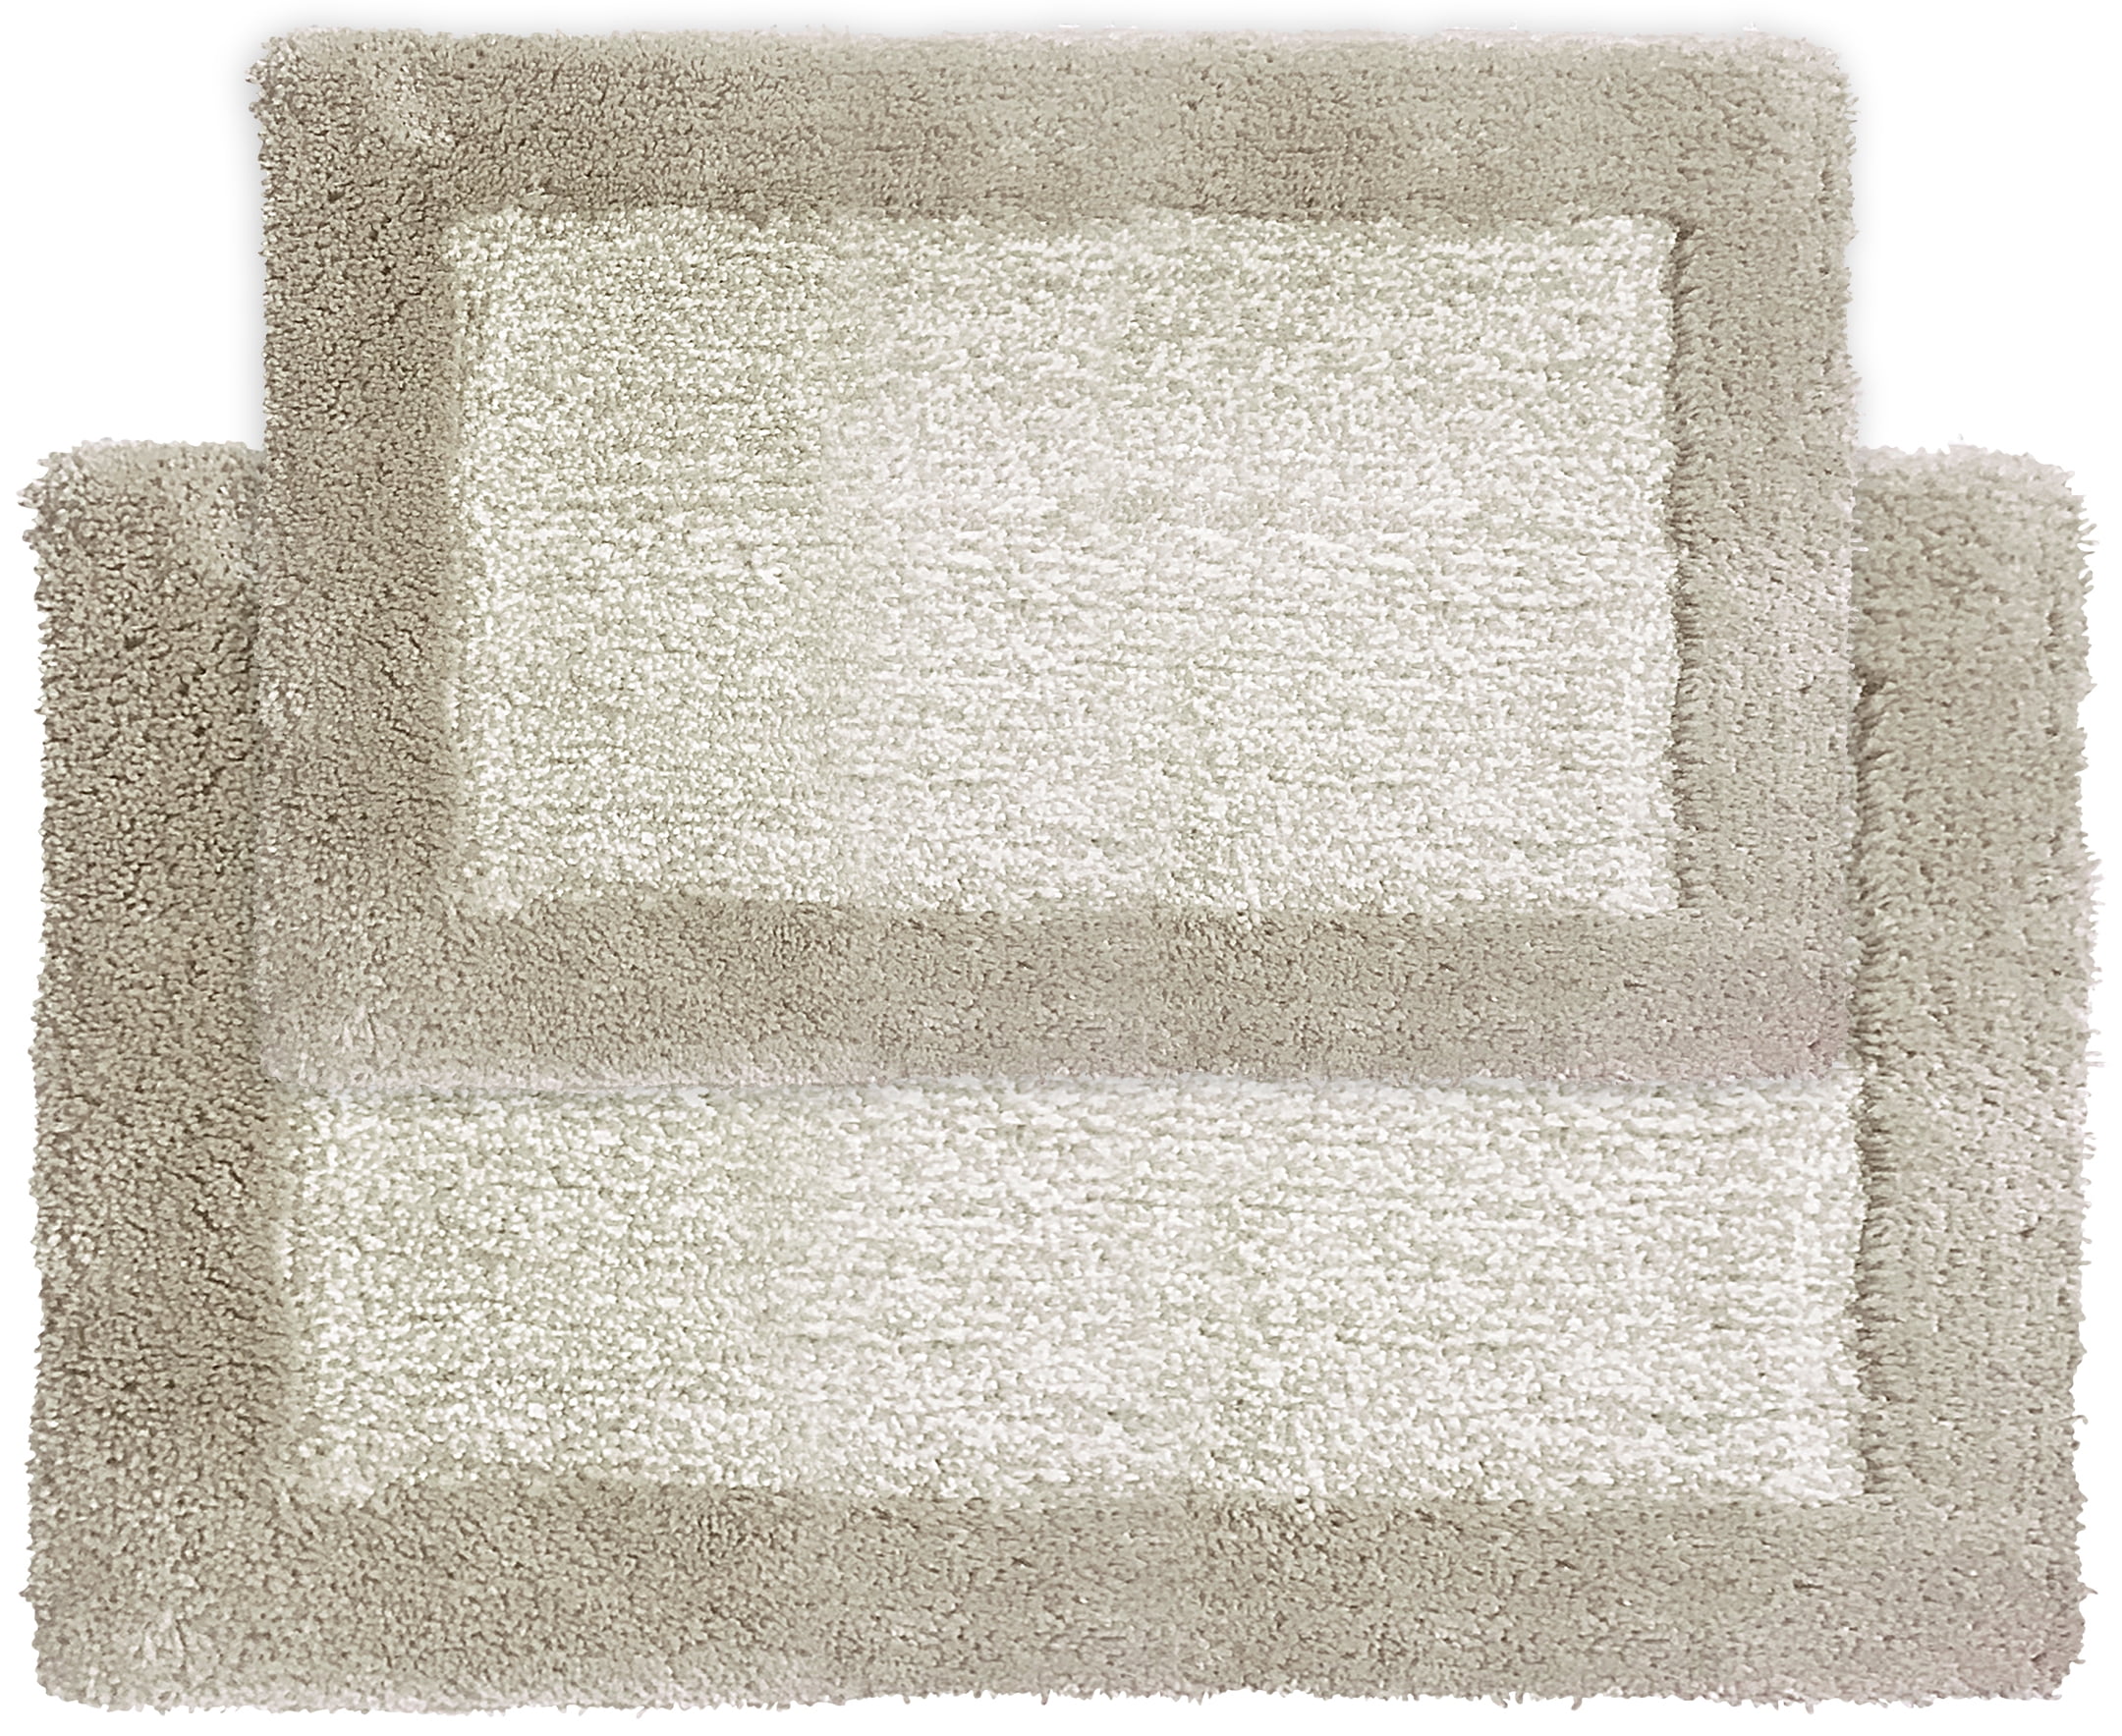 Bathroom Rugs Chenille Soft Striped Plush Bath Mat (Taupe Brown, 20 x 32)  - AliExpress